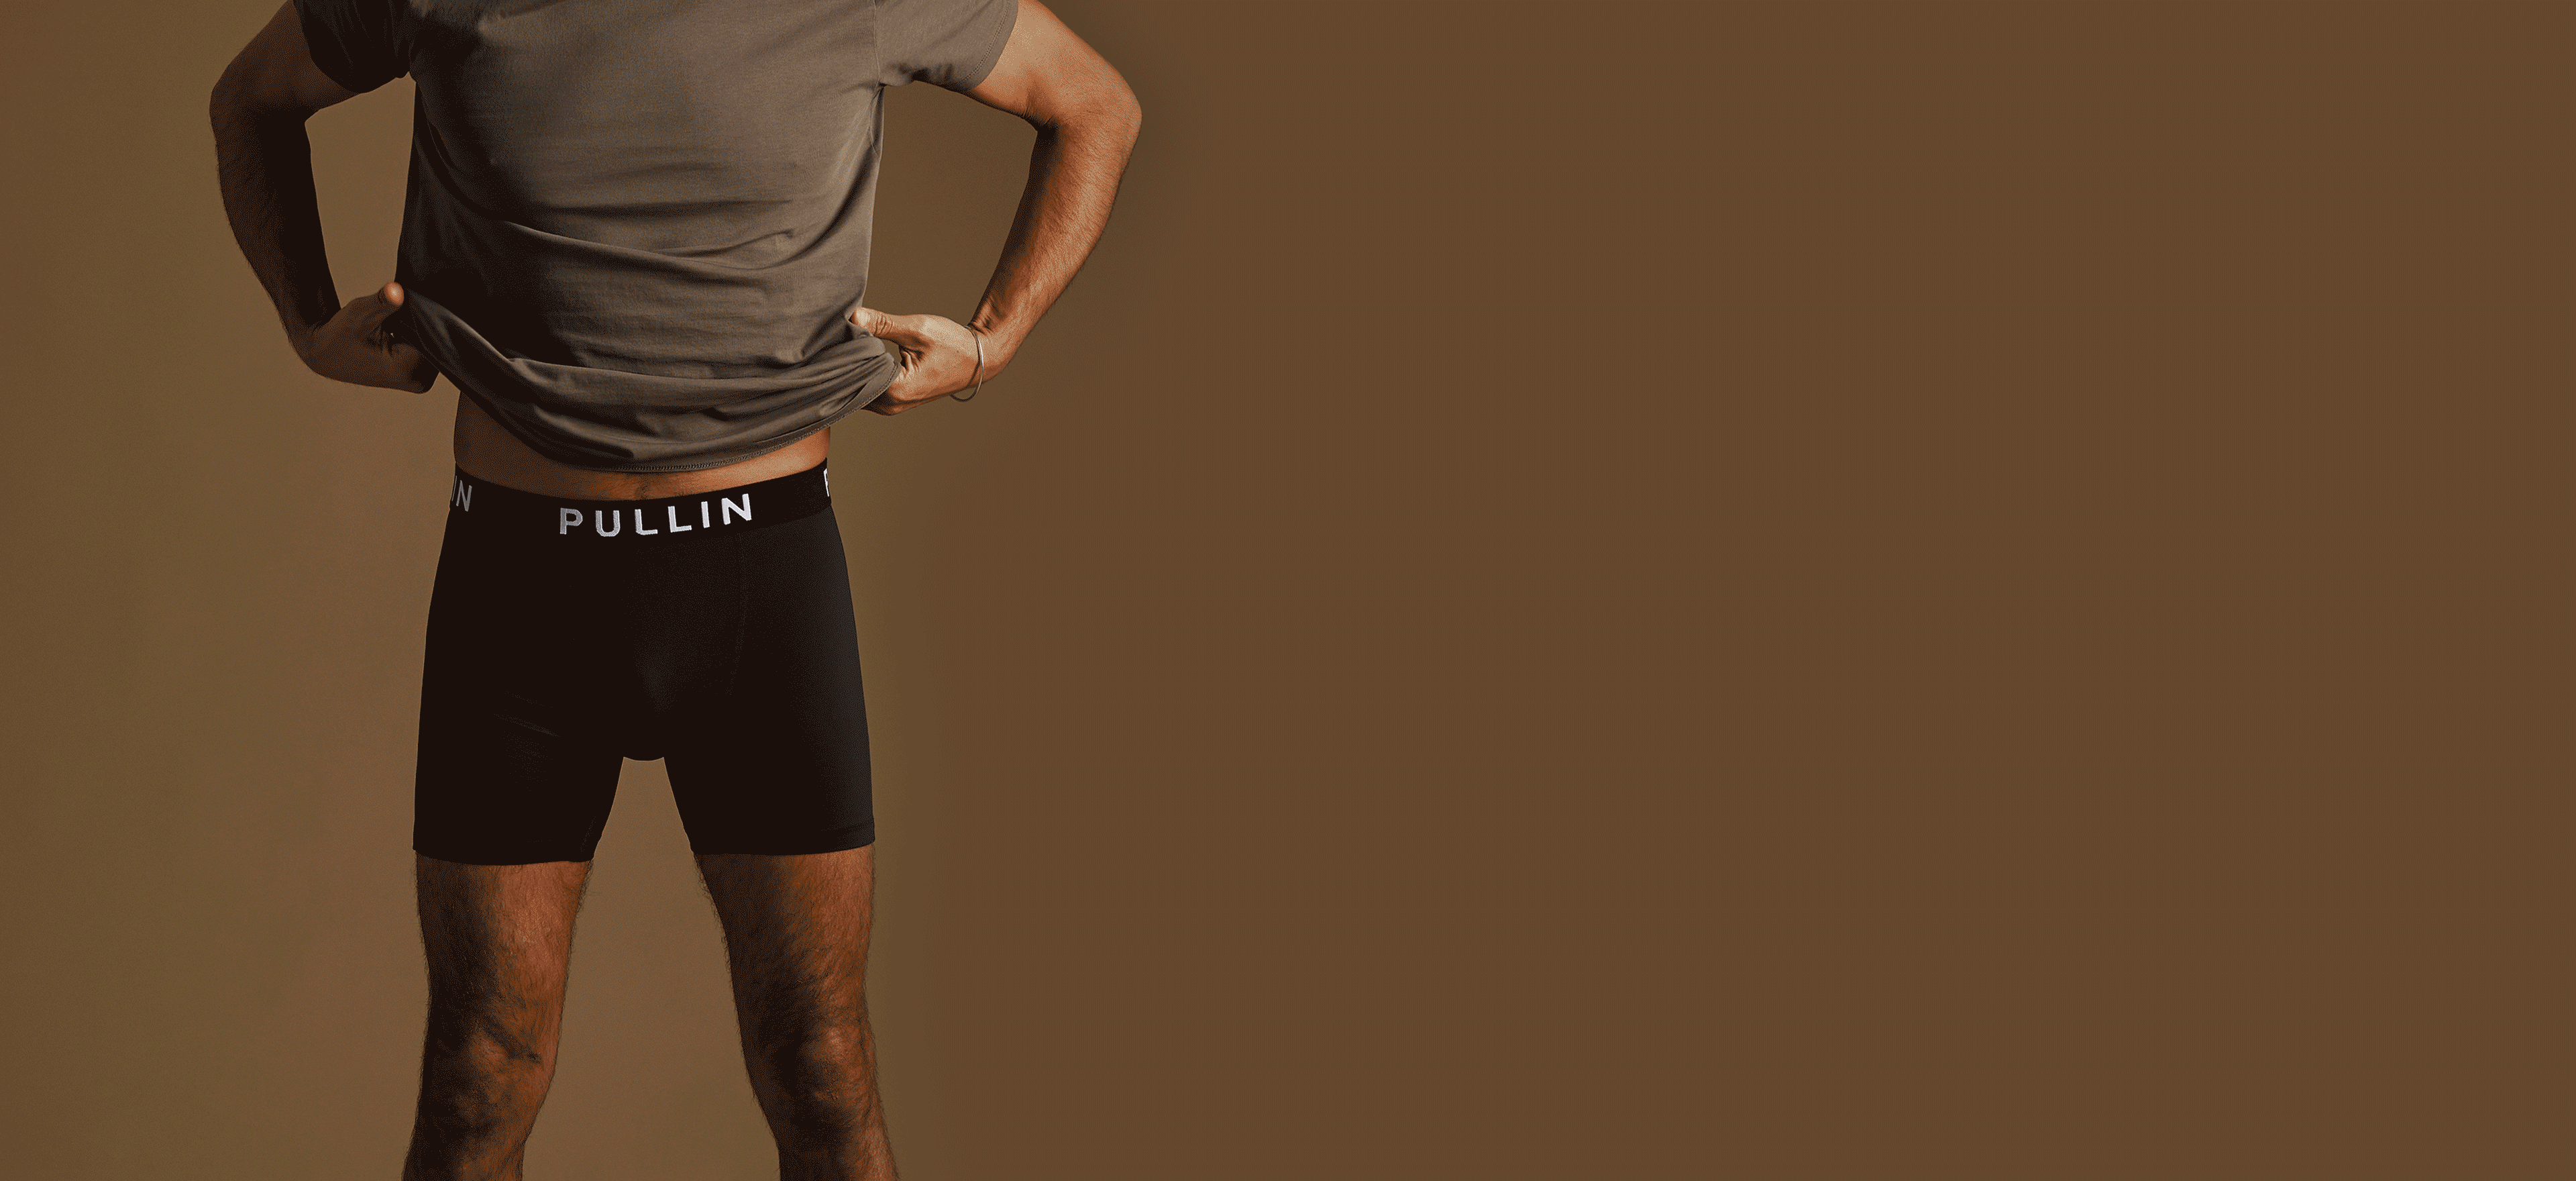 PULLIN  Trunks, Men's Underwear - Apparel